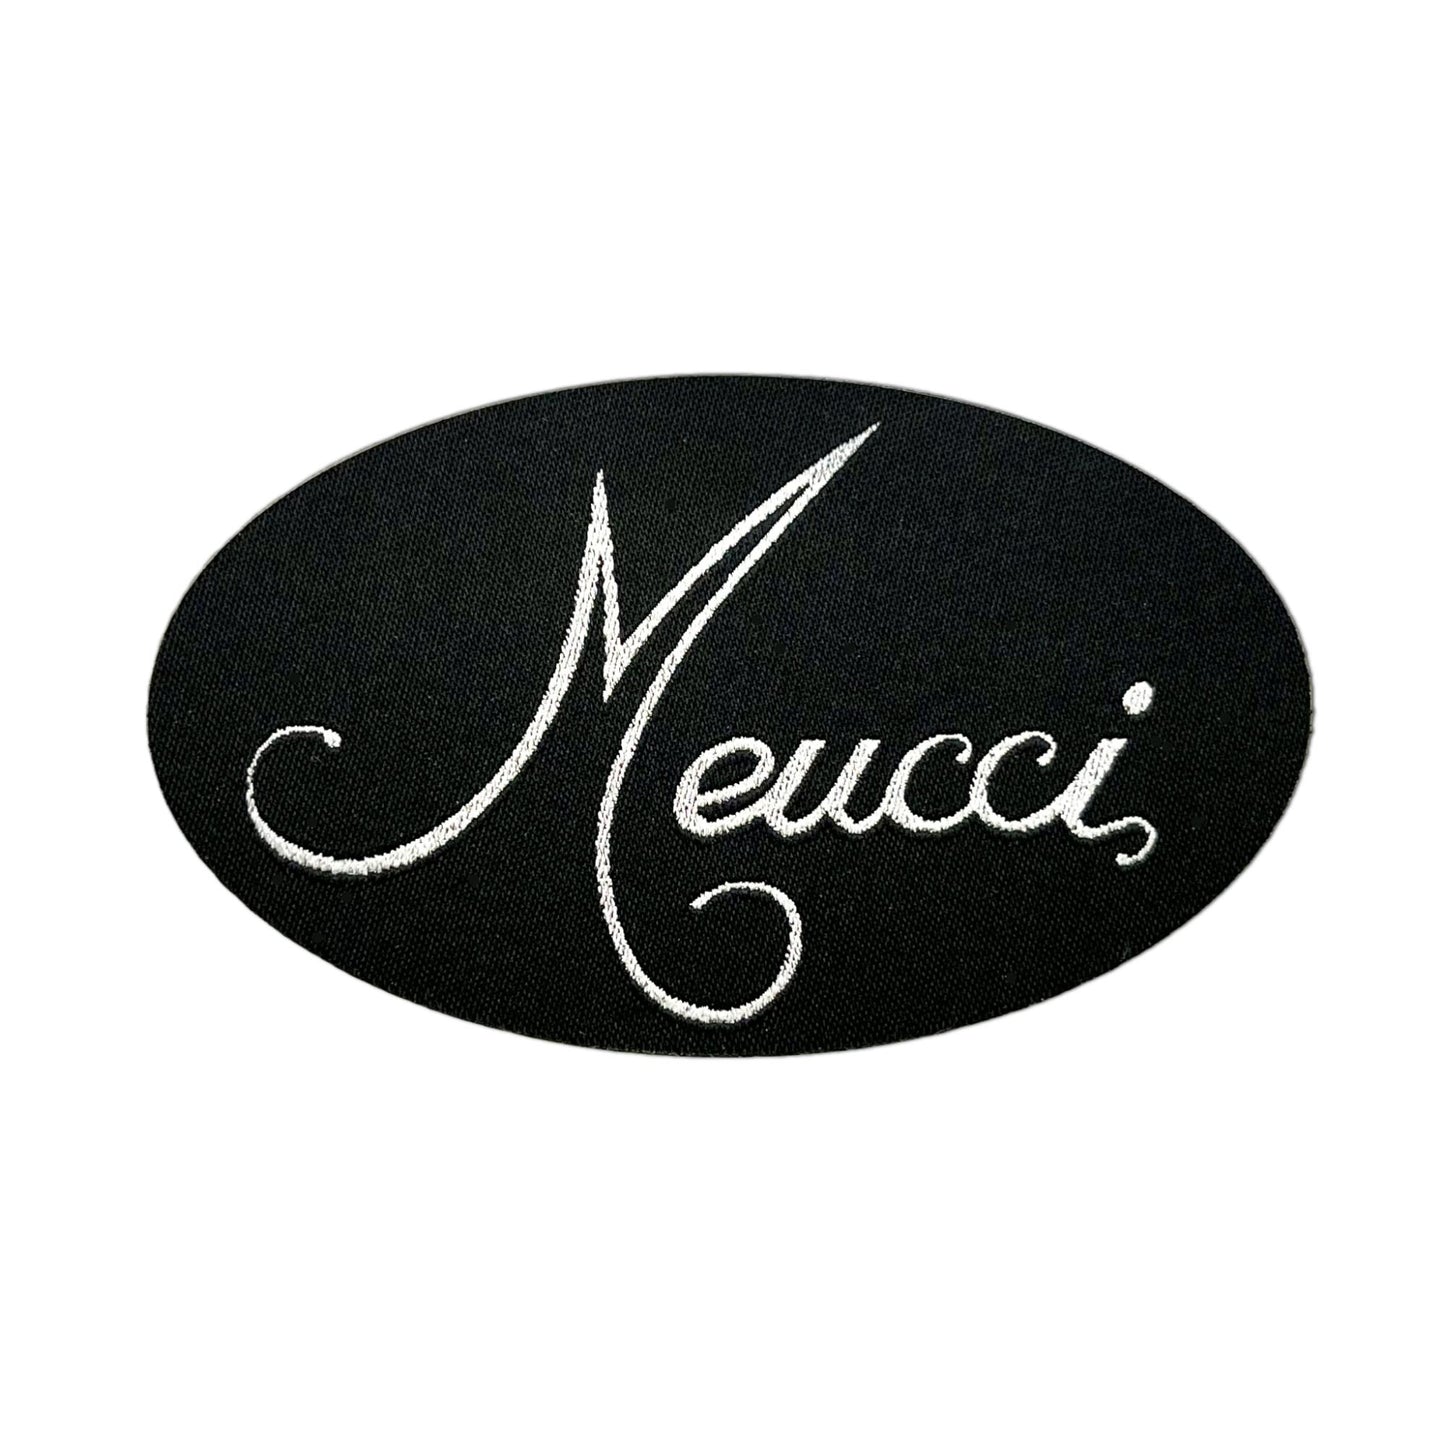 Meucci Patches - Meucci Cues